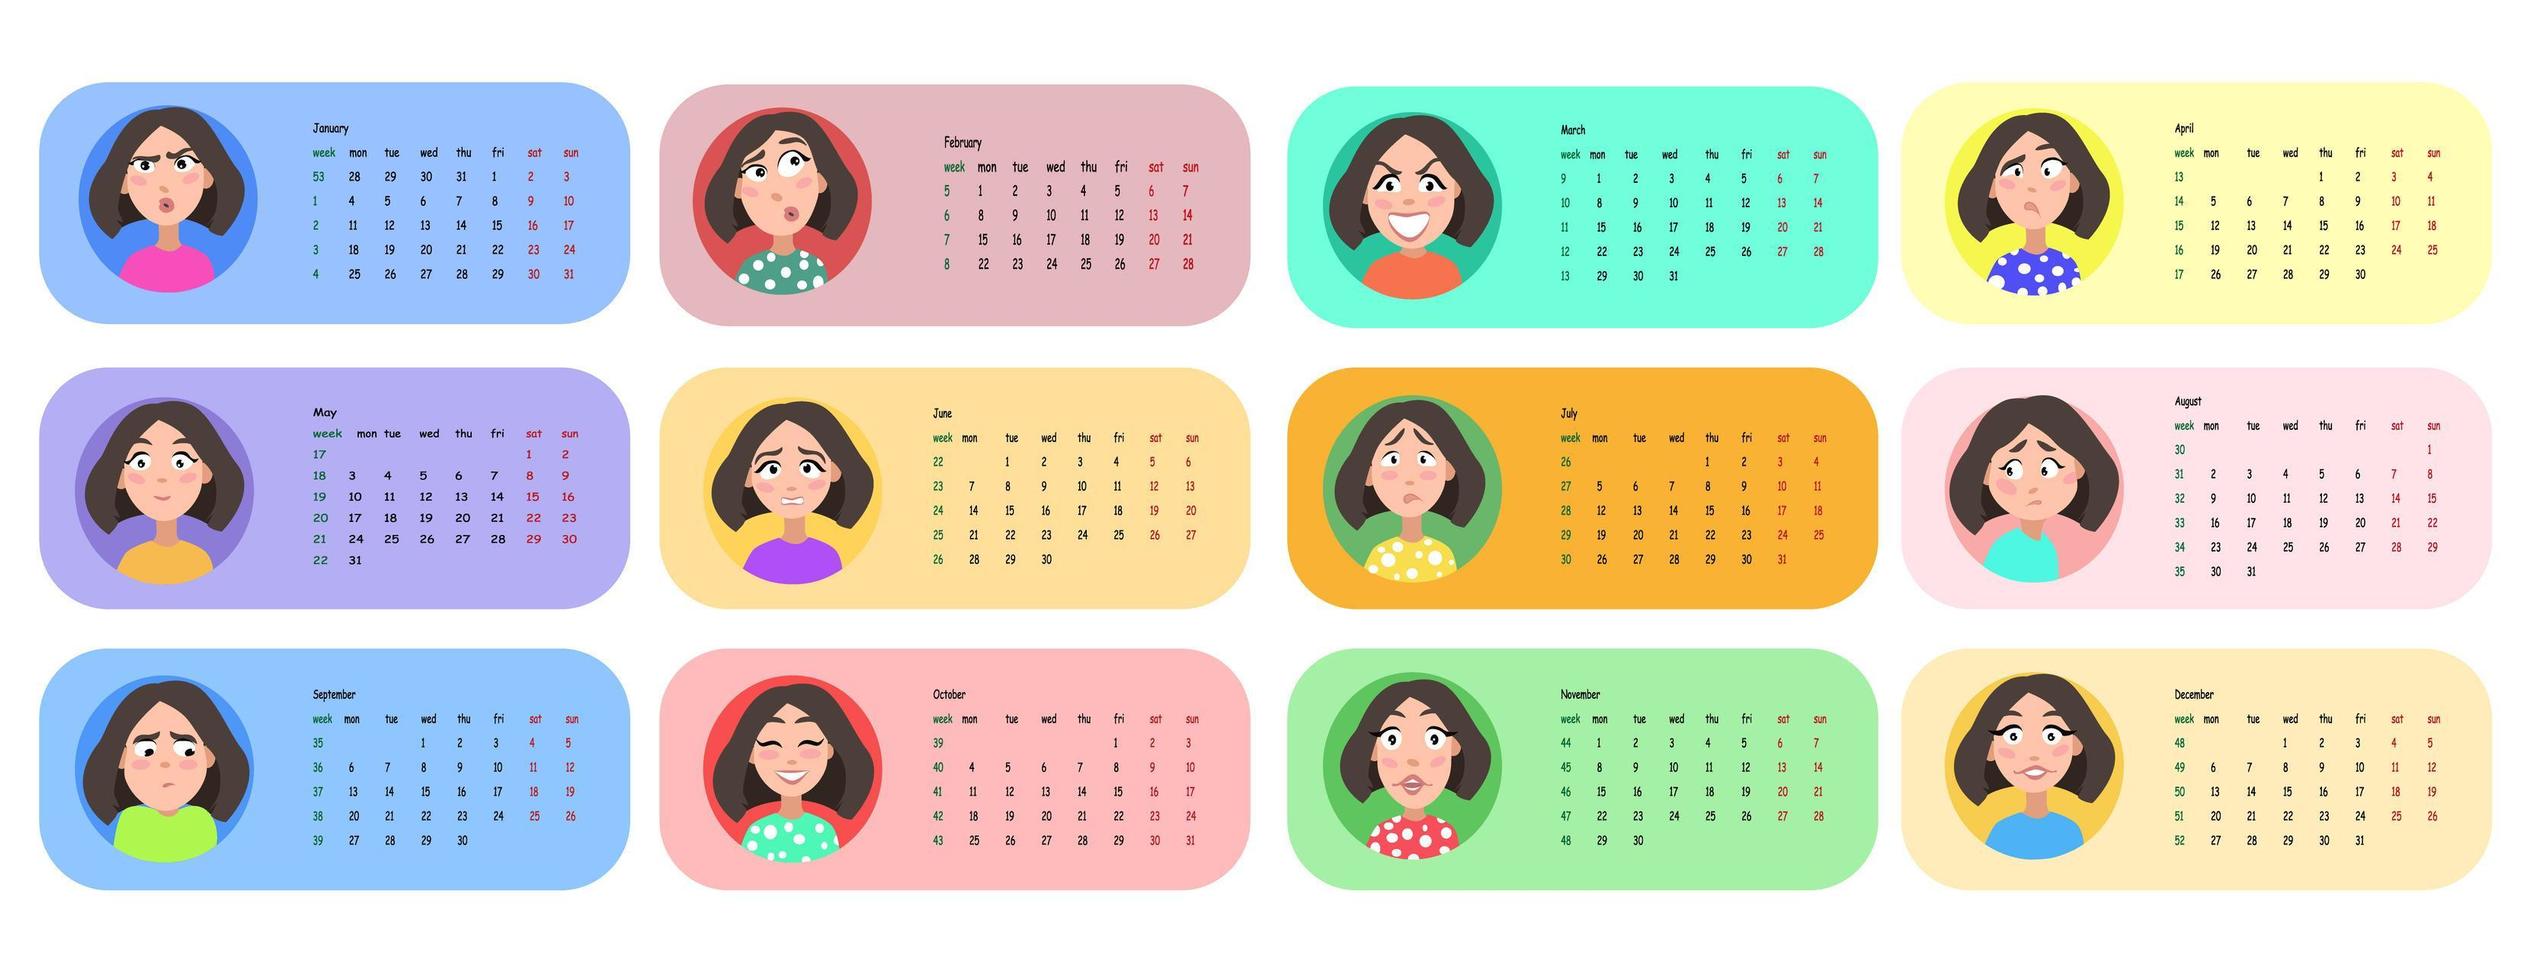 kvinnlig användarprofil. kalender för 2021 i 12 månader. vektor